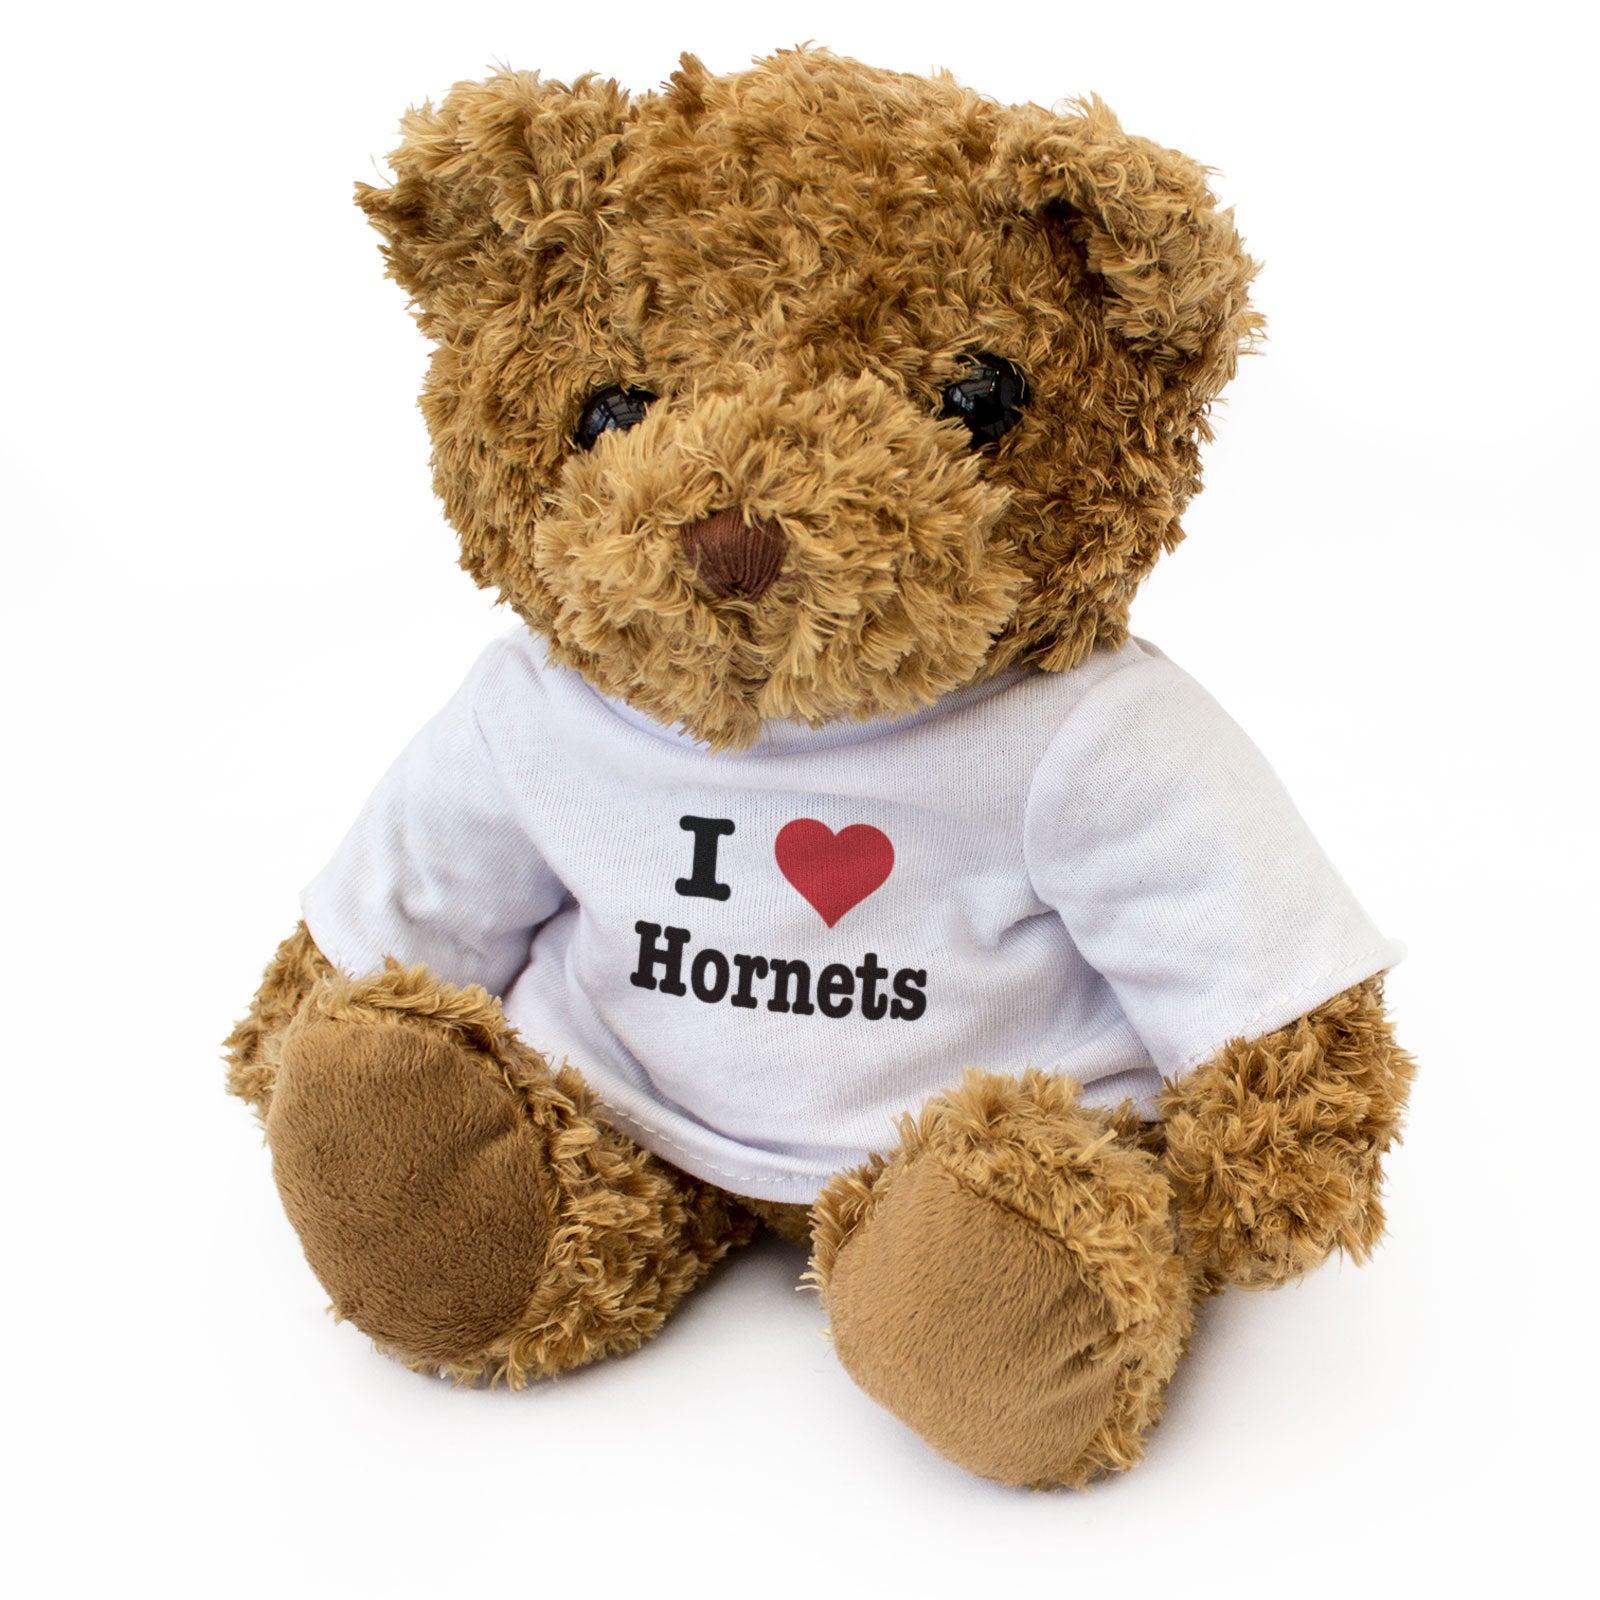 I Love Hornets - Teddy Bear